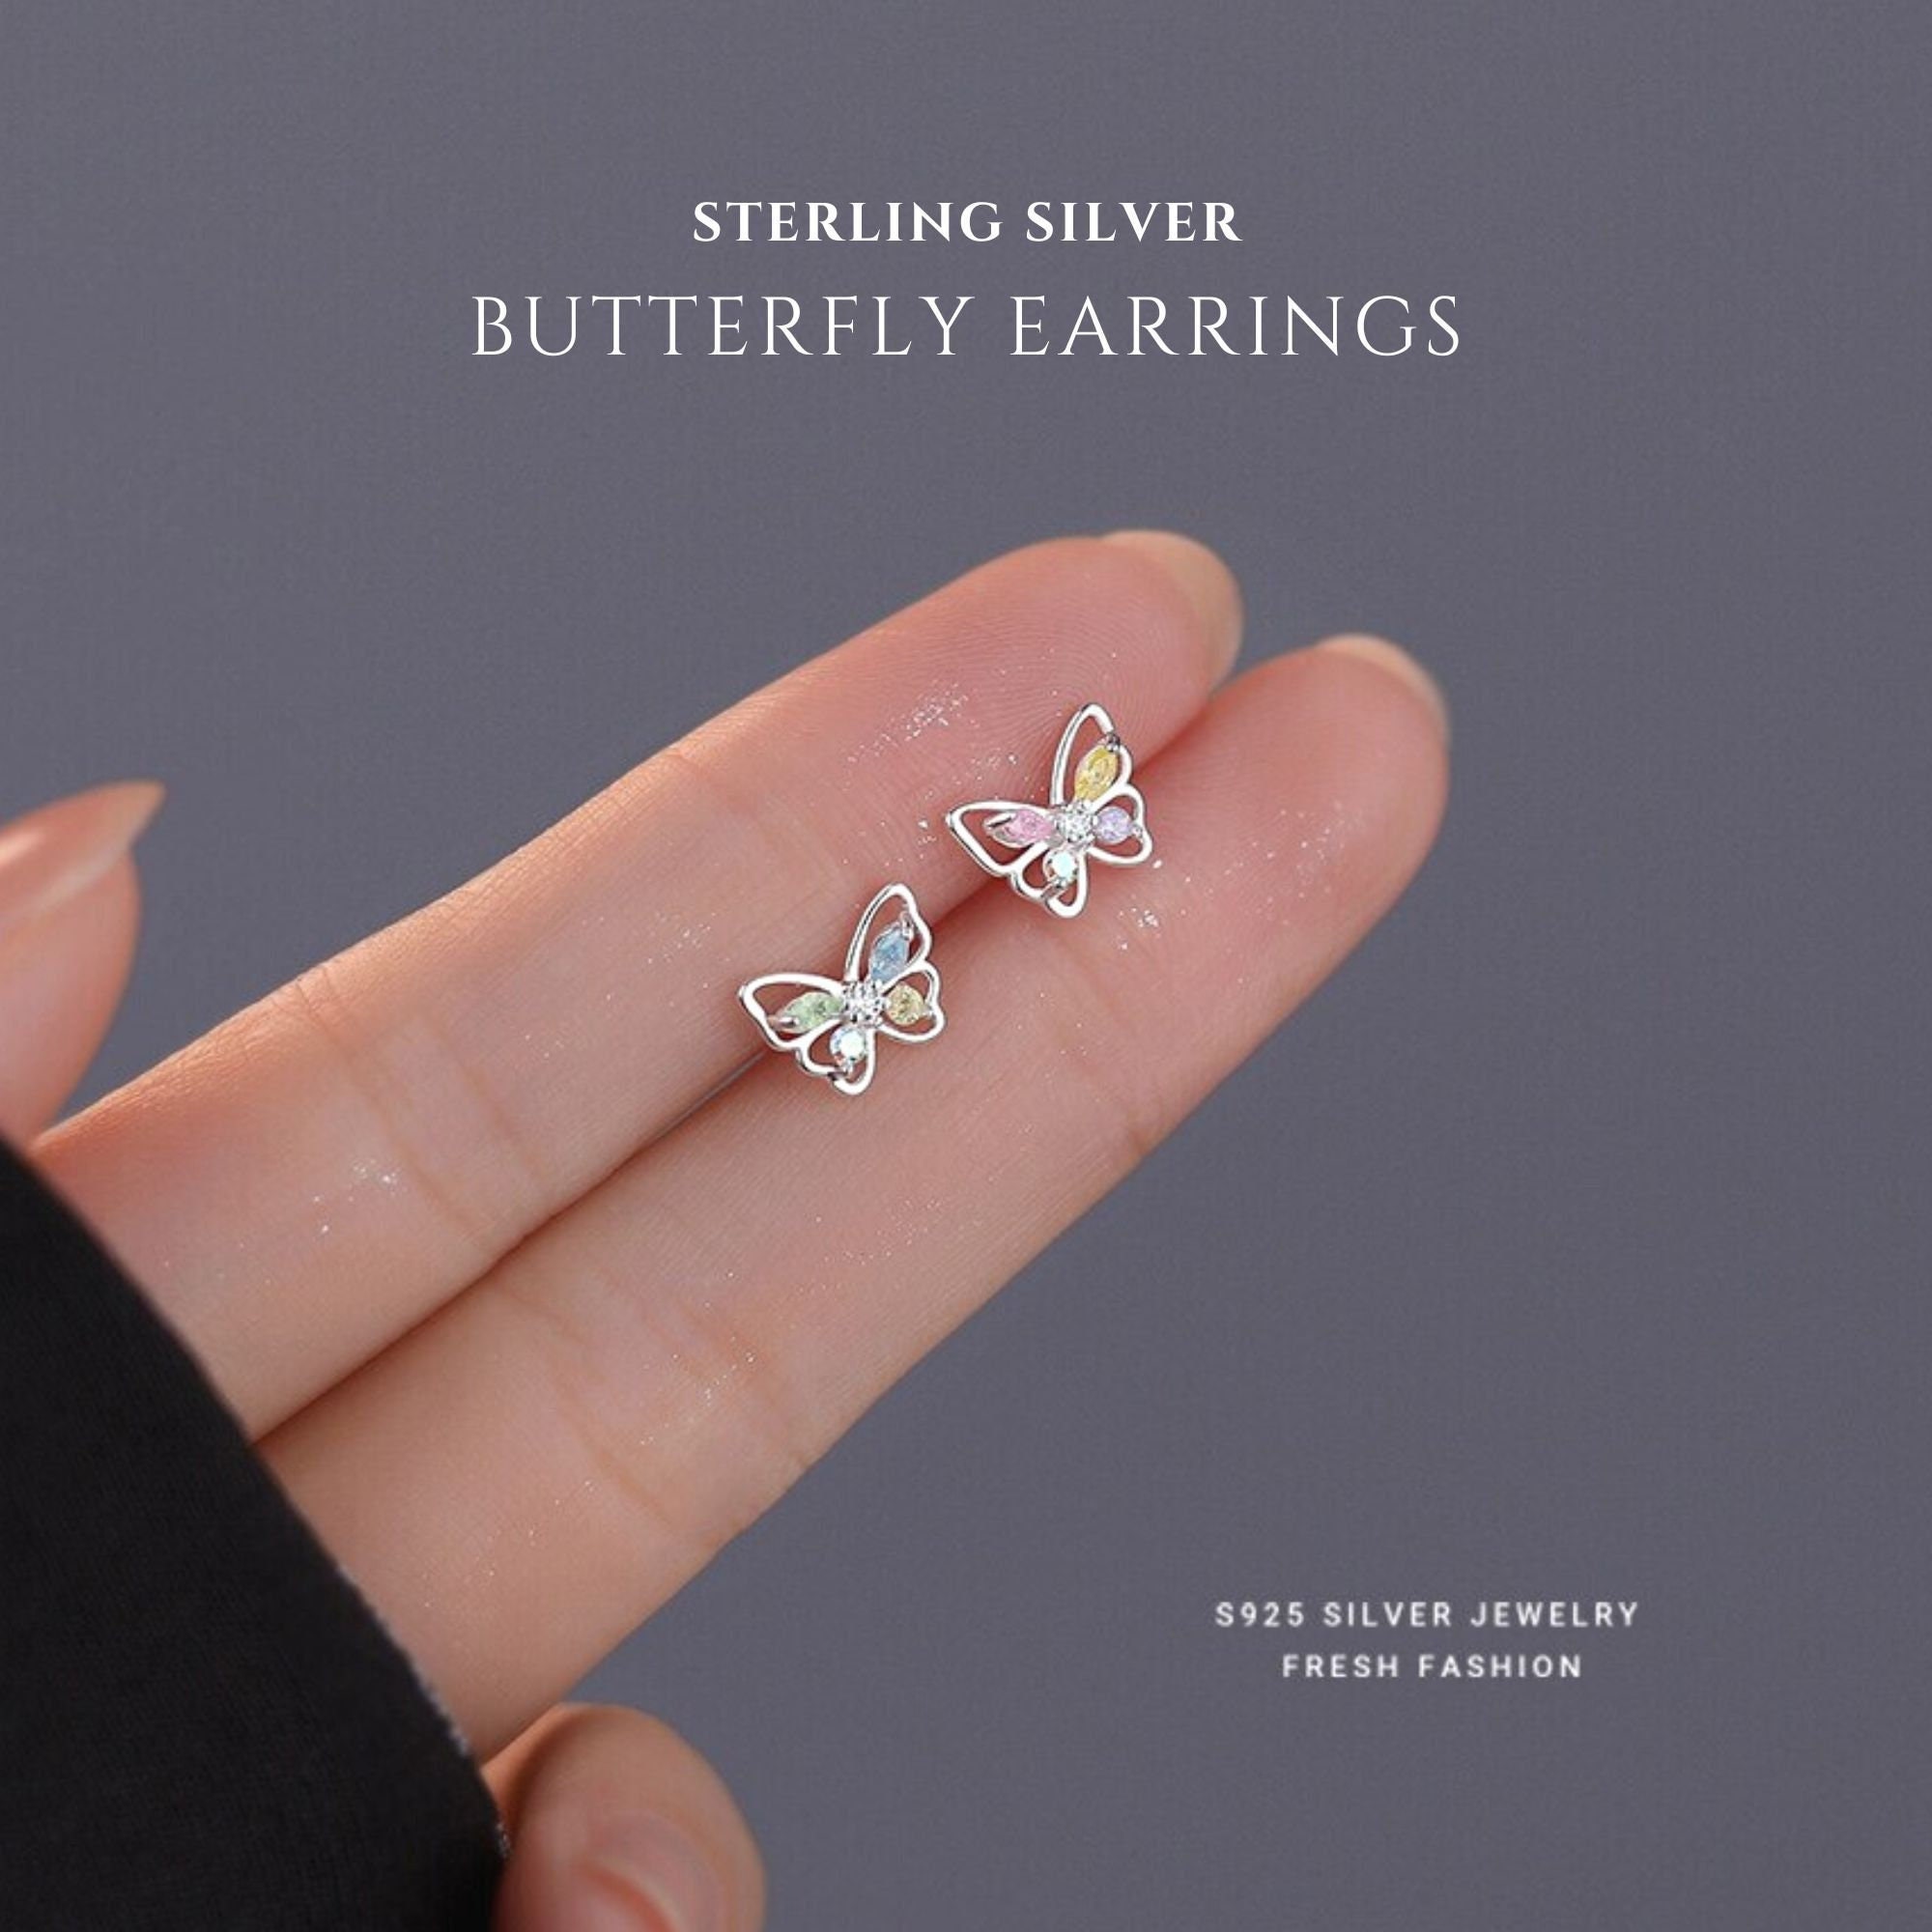 Tiny Butterfly Wing Earrings in Sterling Silver, Butterfly Earrings,  Butterfly Studs, Kids Earrings, Dainty Earrings, Cartilage Stud - Etsy |  Etsy earrings studs, Kids earrings, Wing earrings